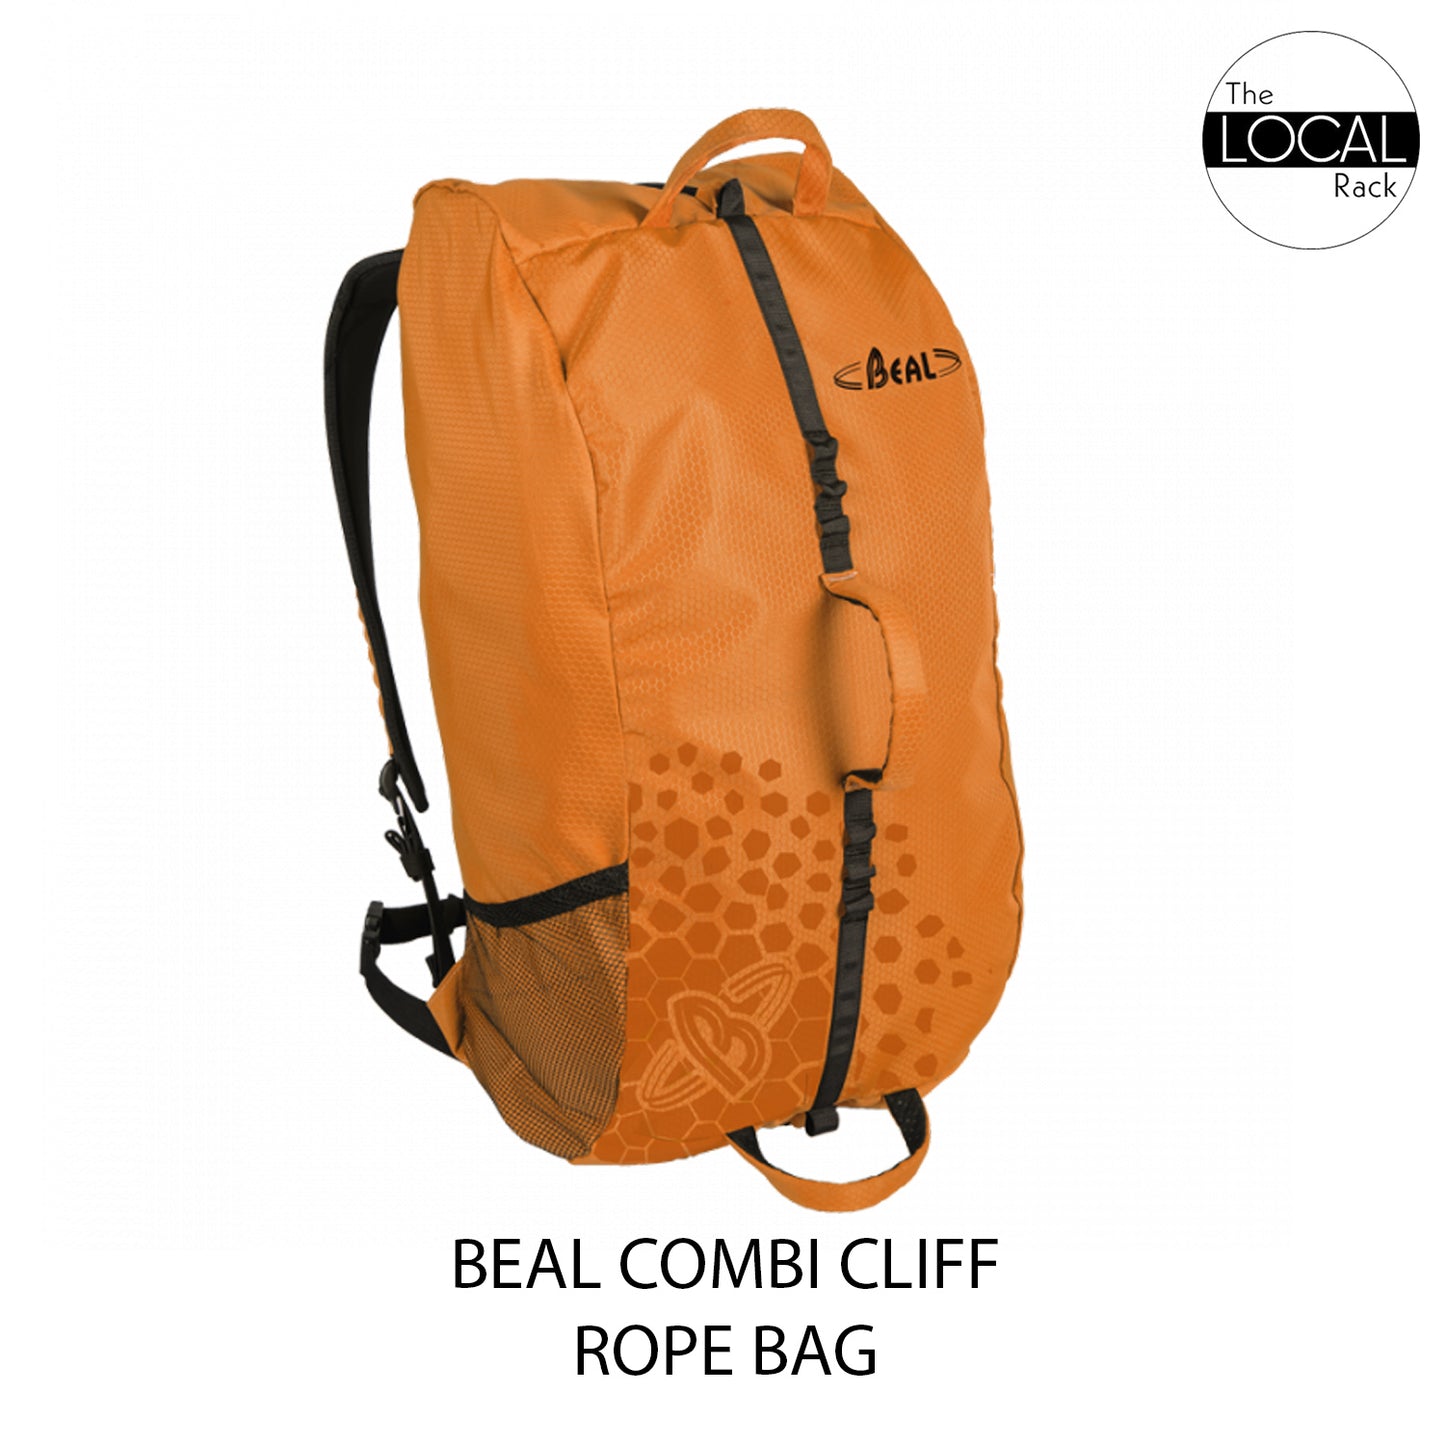 Beal COMBI CLIFF Rope Bag